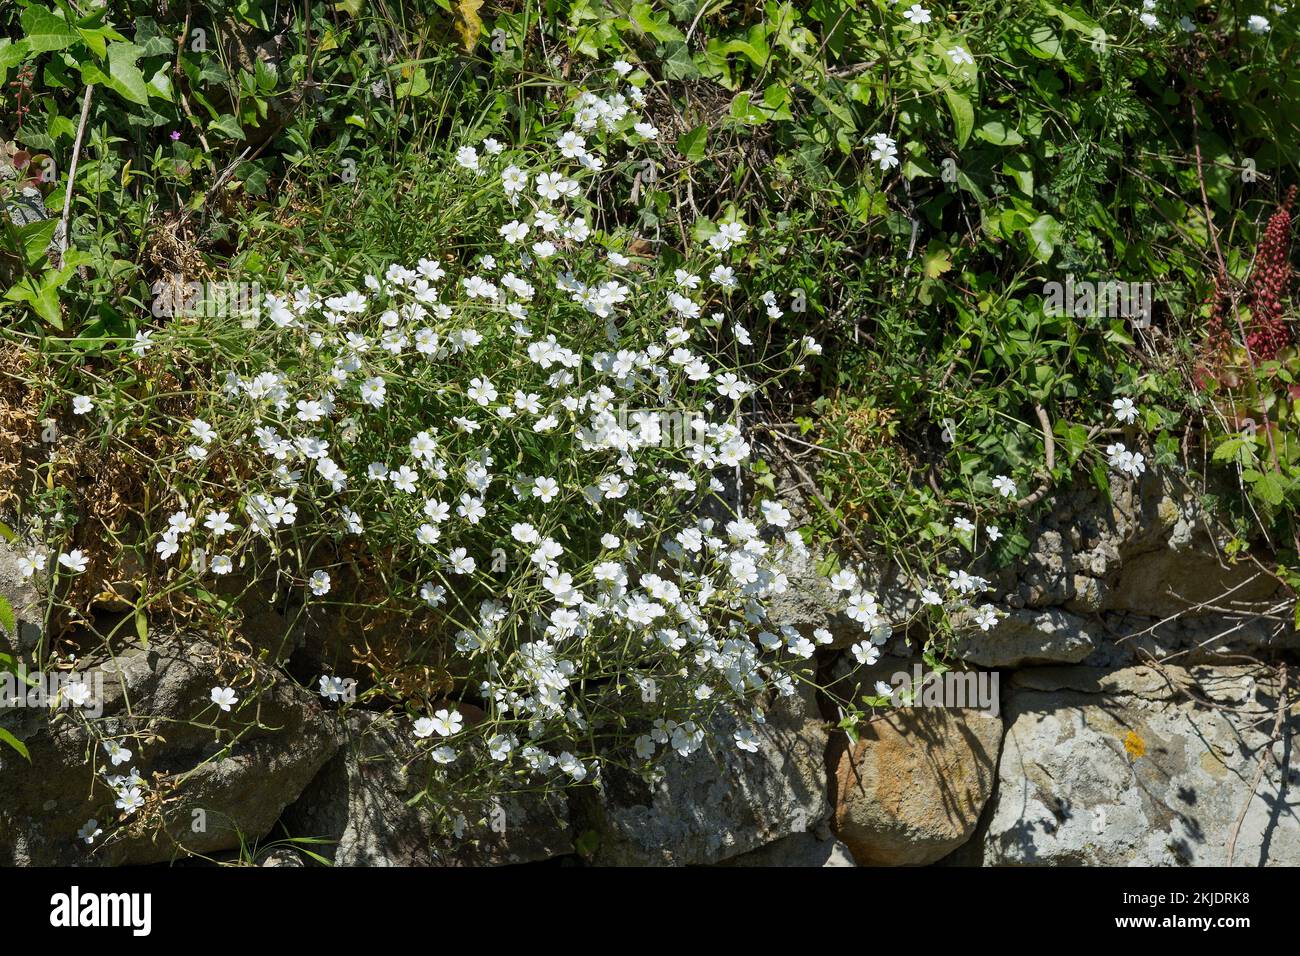 Oreille de souris de champ (Cerastium arvense). Caryophyllaceae. Petite herbe vivace. plante sauvage. fleurs blanches Banque D'Images